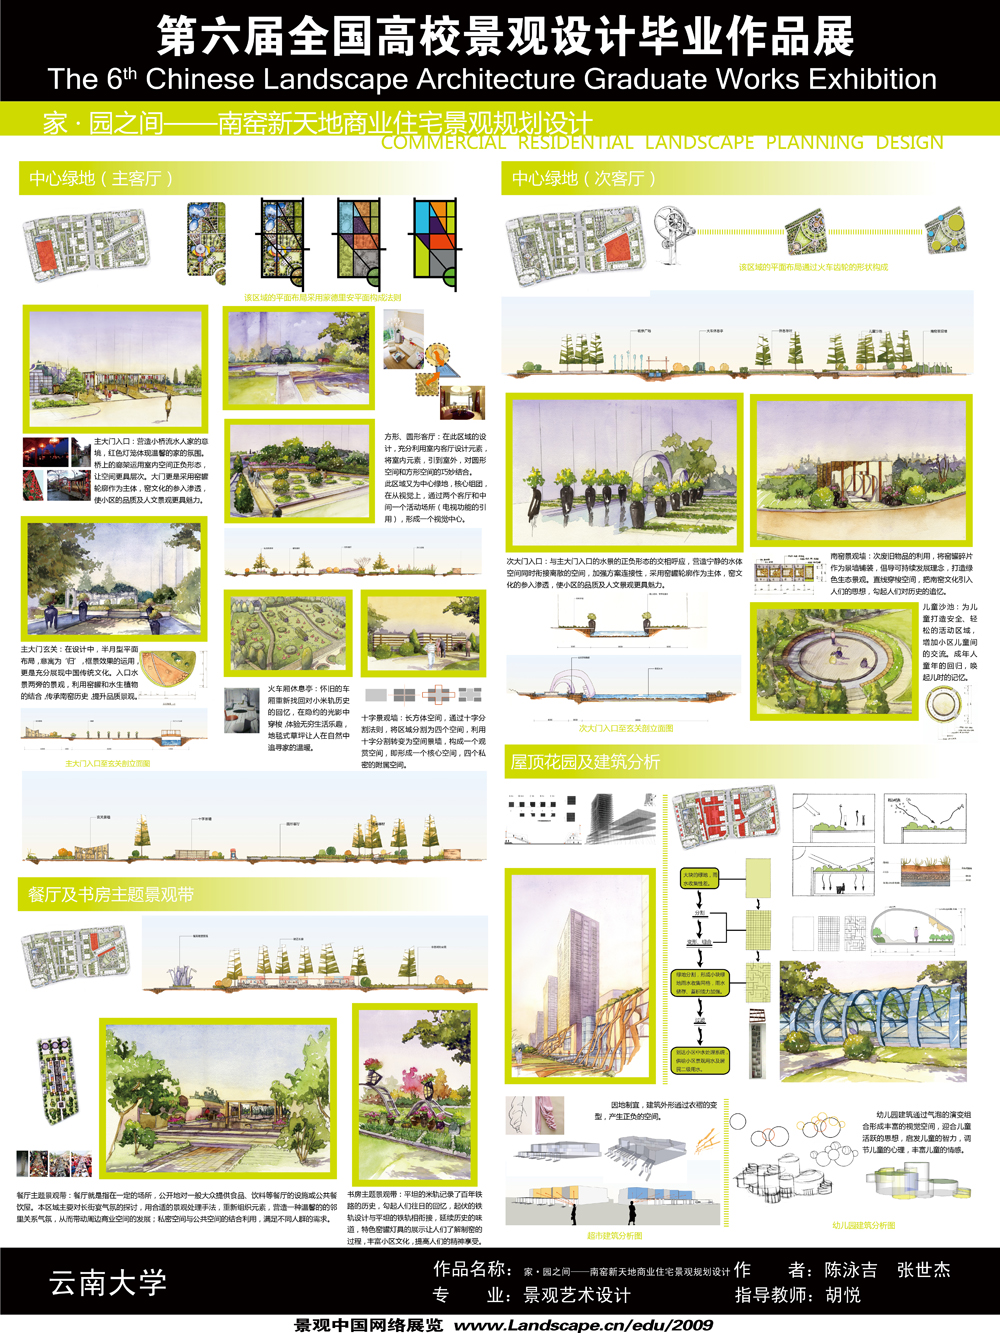 家?园之间------南窑新天地商业住宅小区景观规划设计-2